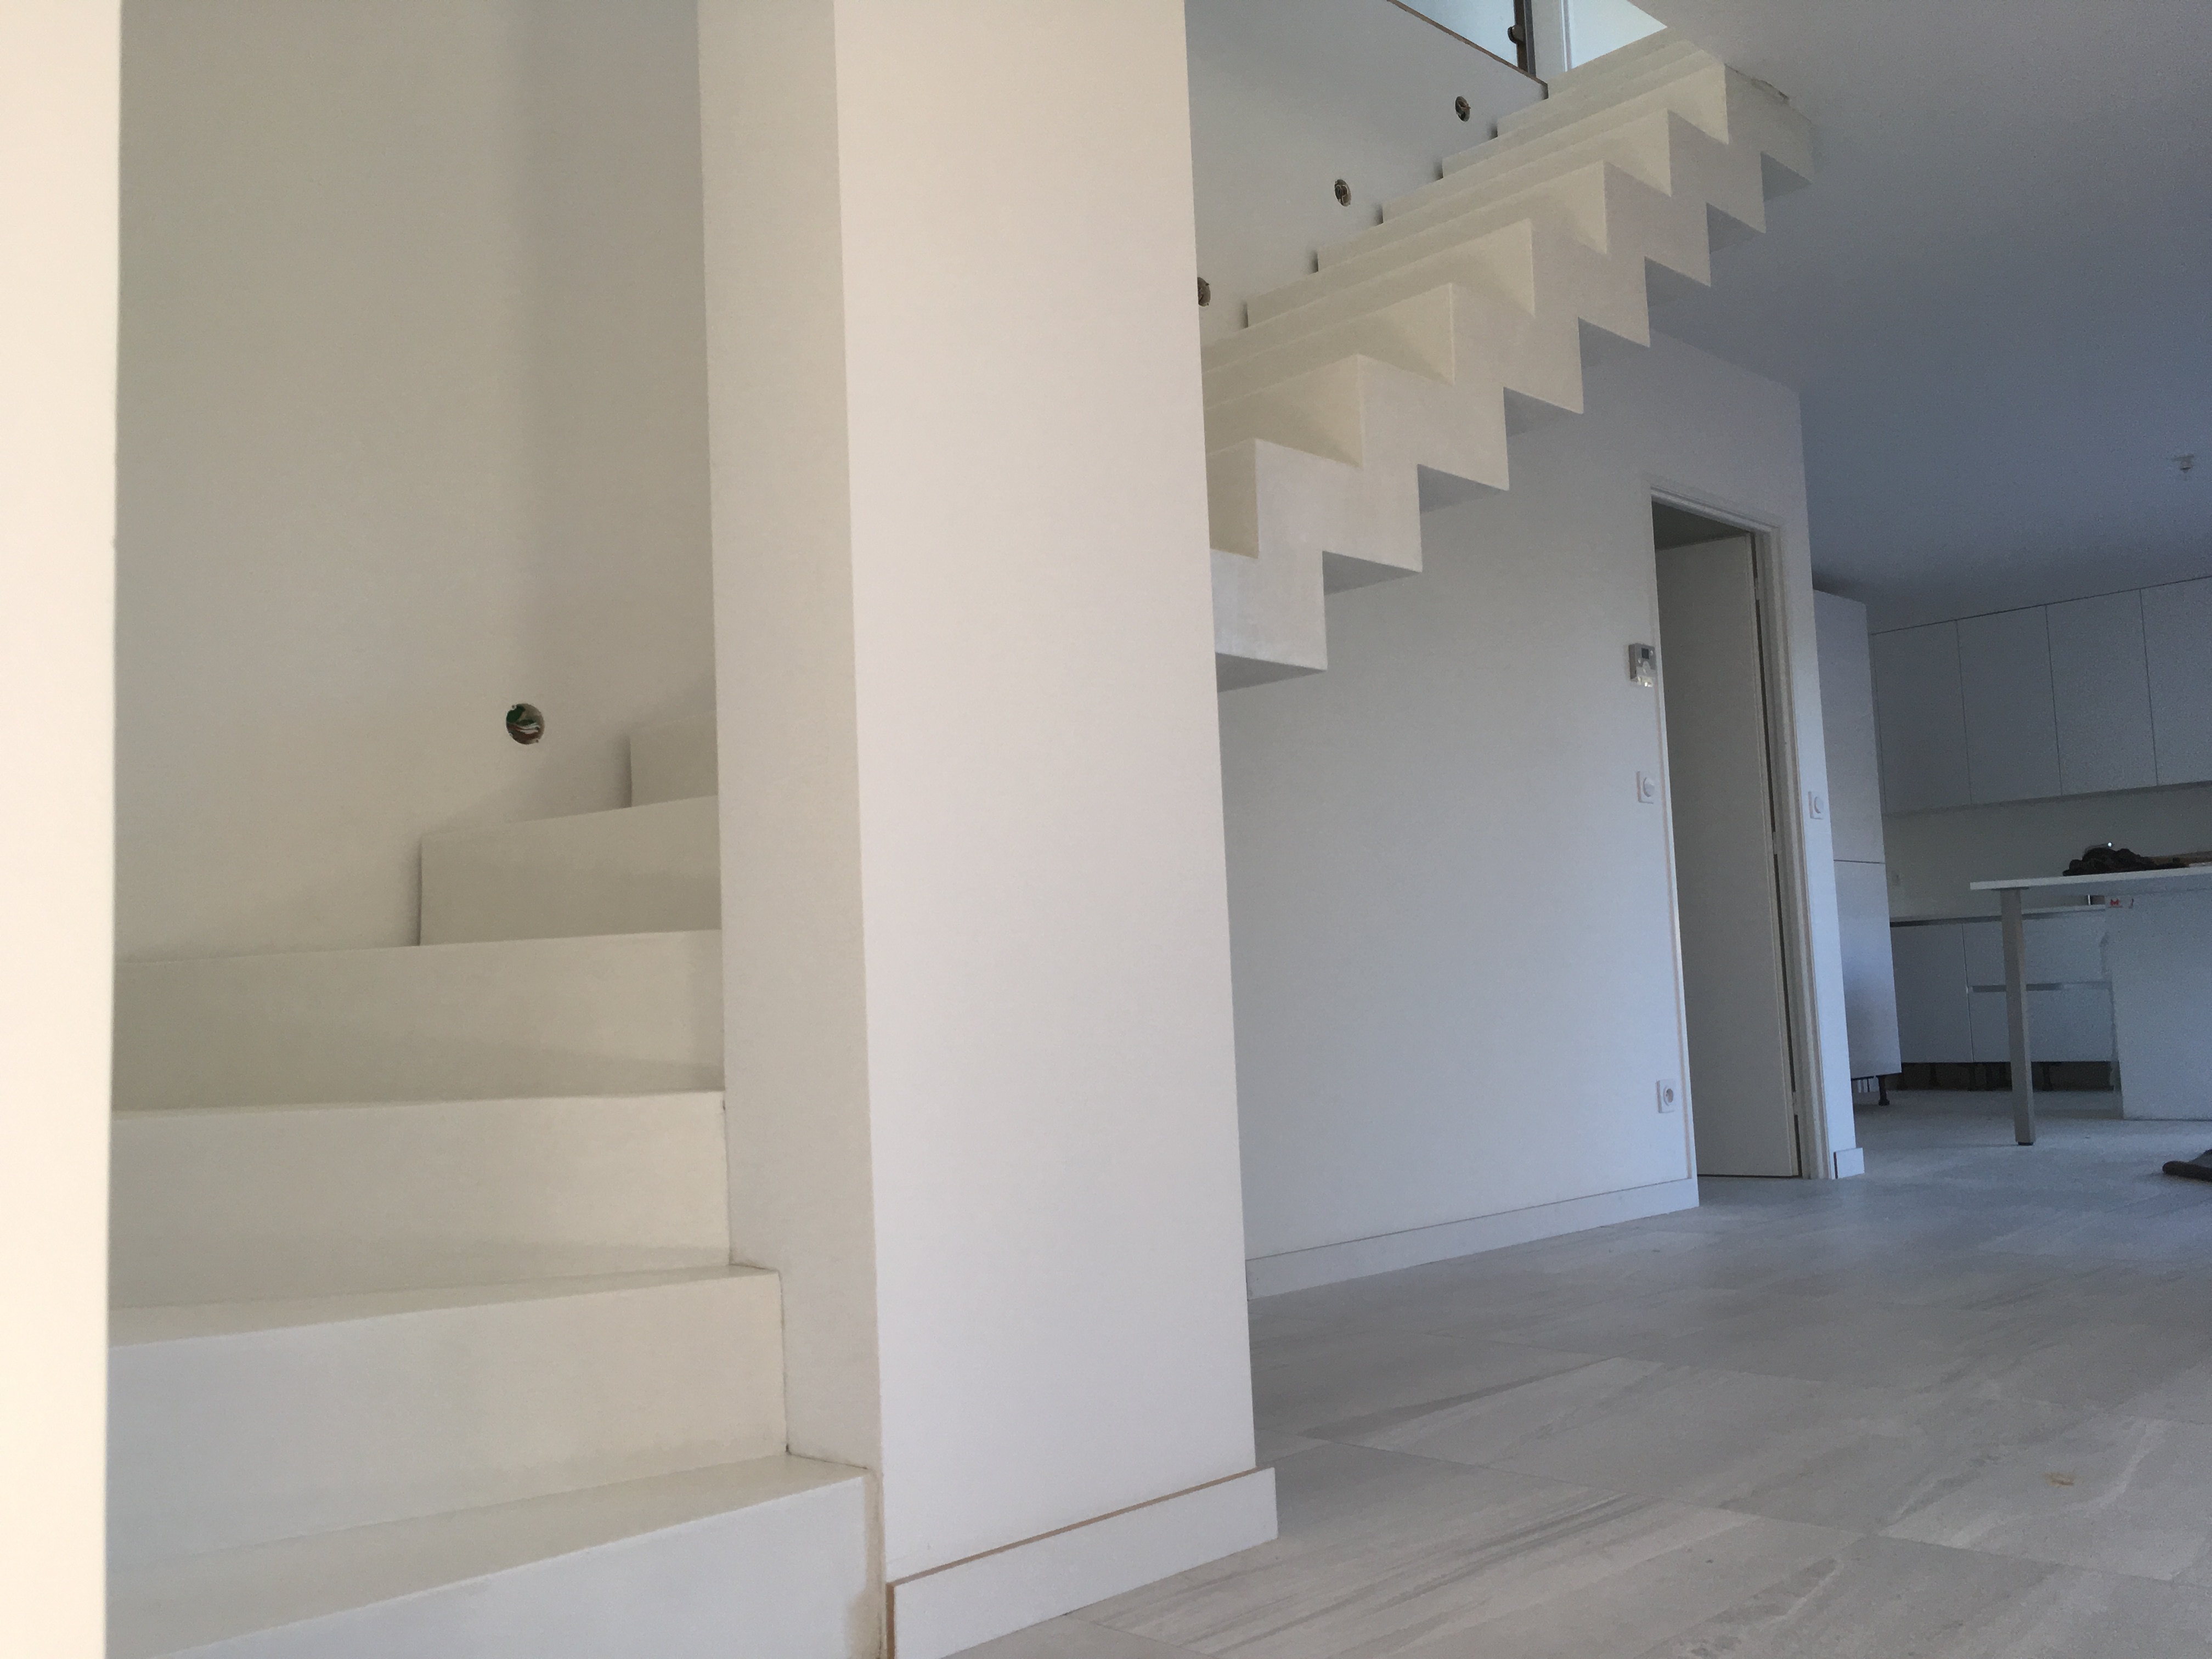 audacieux escalier crémaillère moderne en béton ciré vernis mat couleur everest blanc pur à Bordeaux pour un particulier